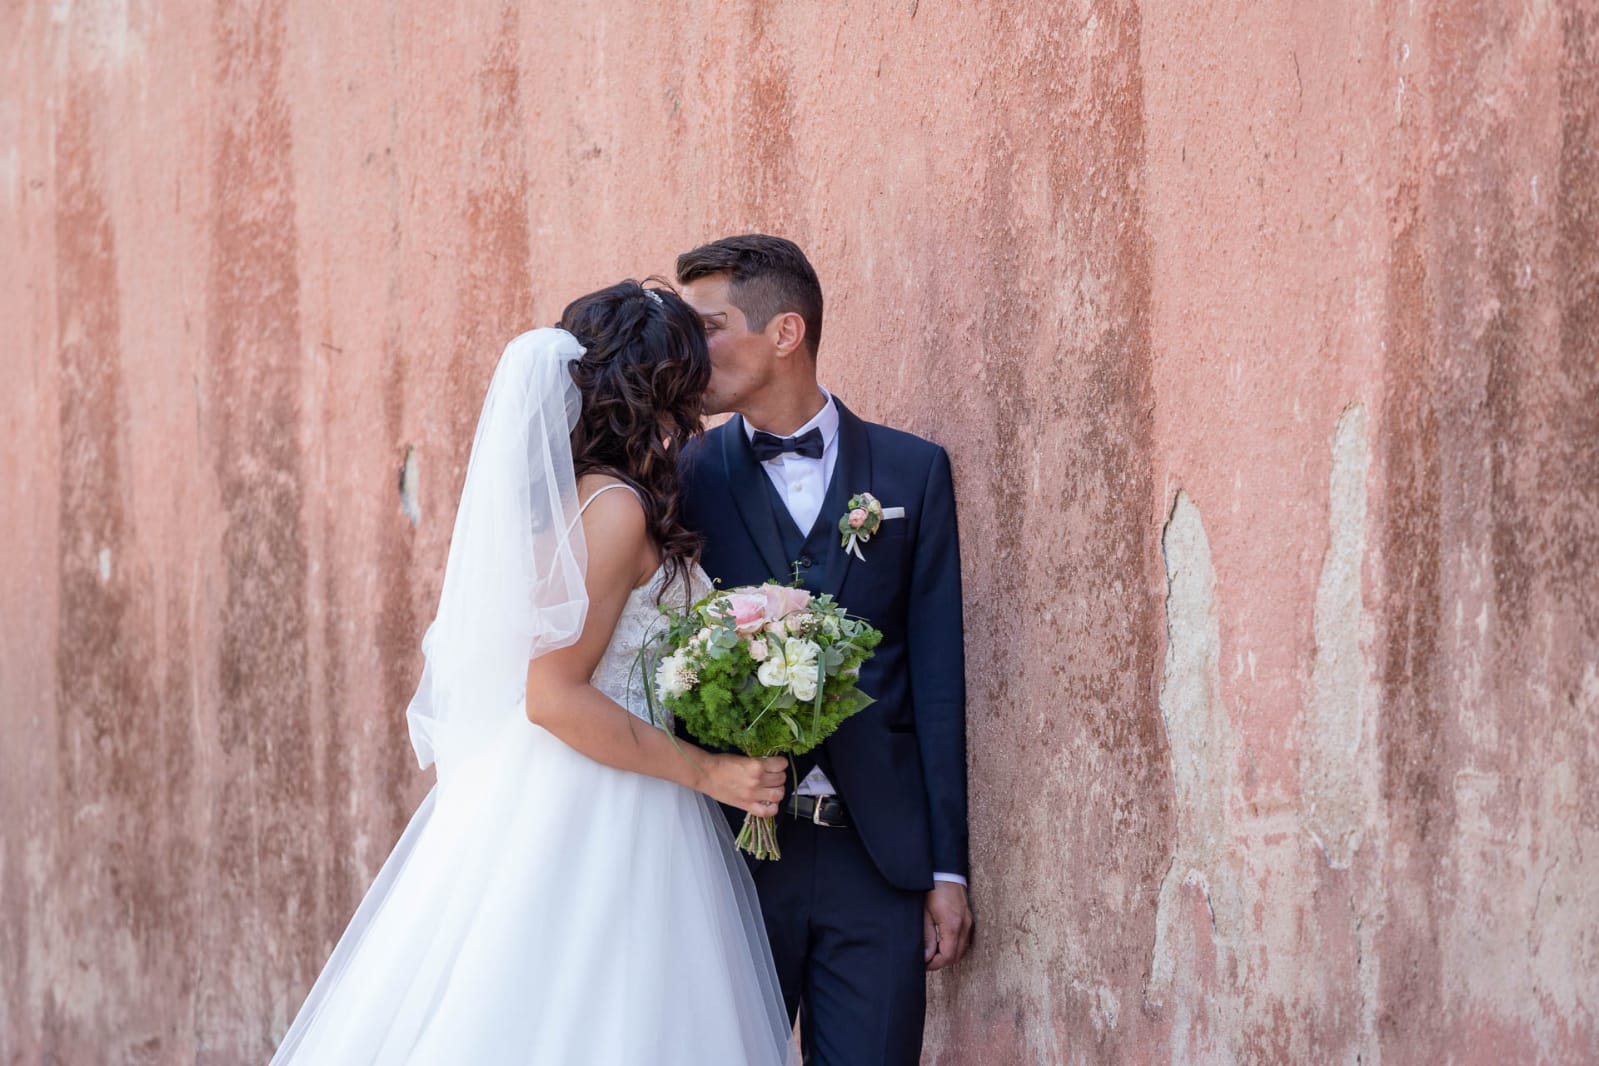 matrimonio thiene elena spose atelier vestiti da sposa breganze marostica bassano